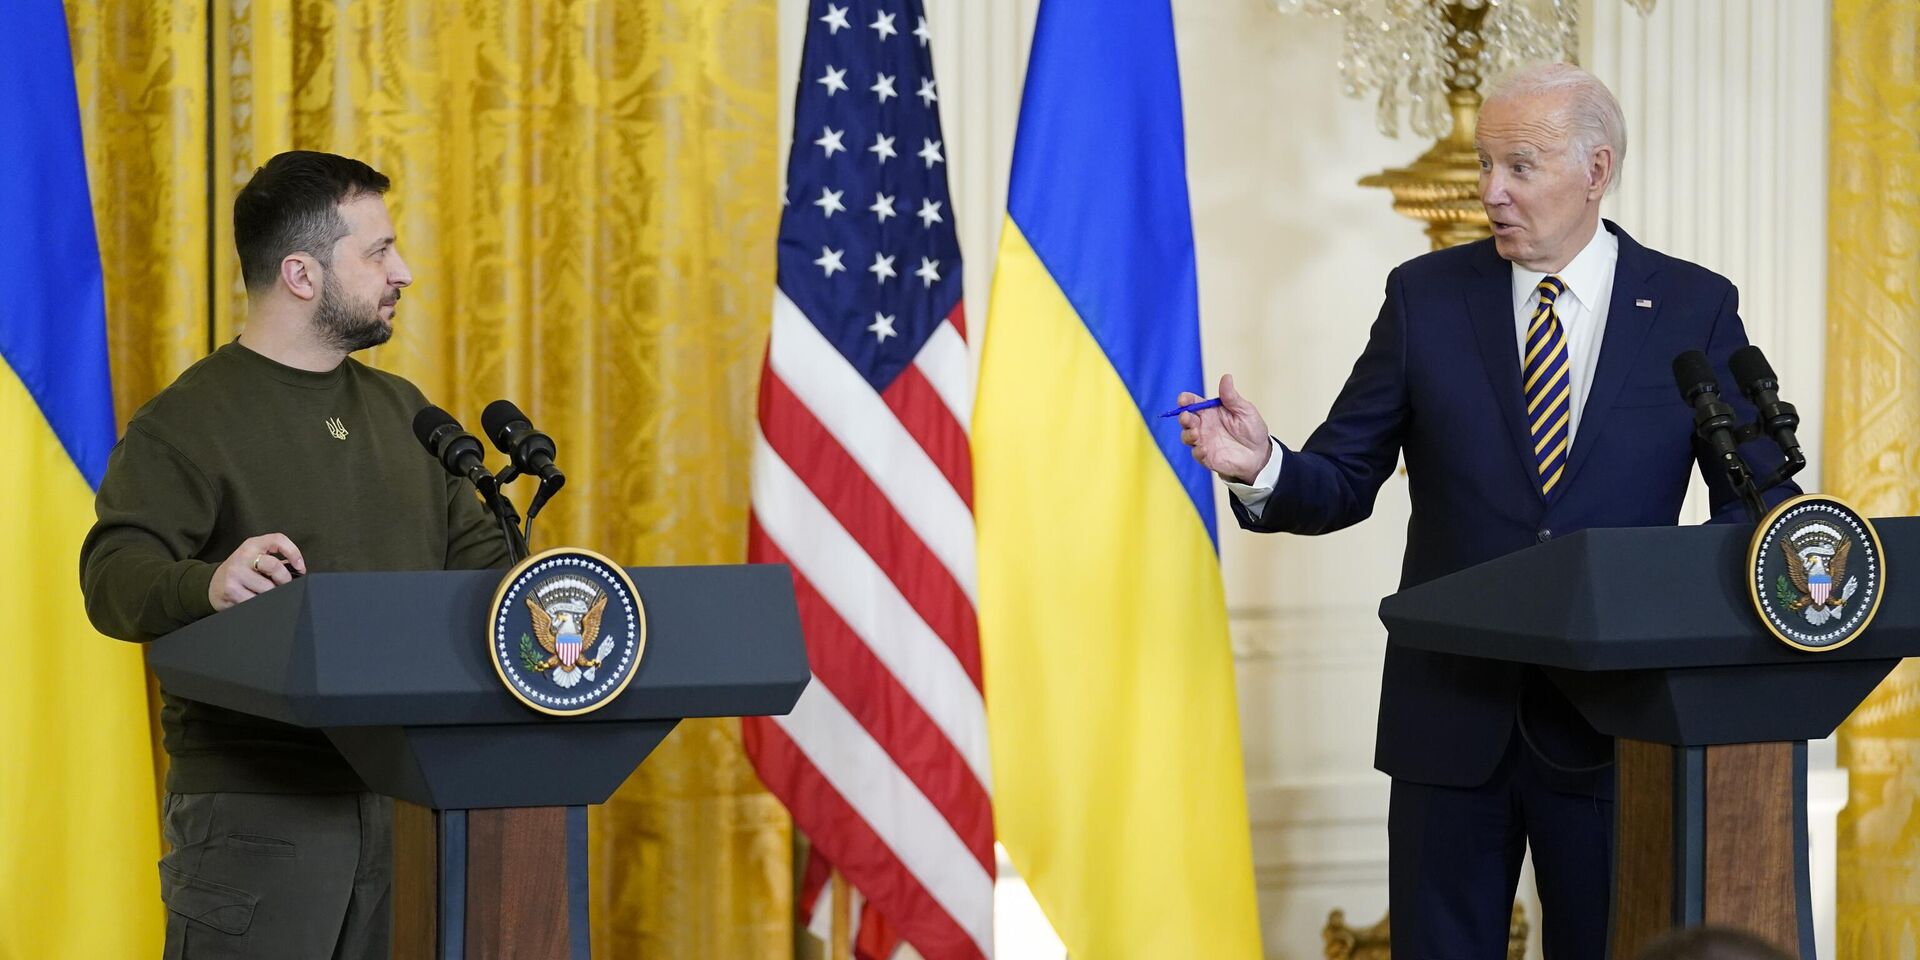 Президент США Джо Байден и президент Украины Владимир Зеленский во время пресс-конференции в Белом доме в Вашингтоне. 21 декабря 2022 года - ИноСМИ, 1920, 22.12.2022